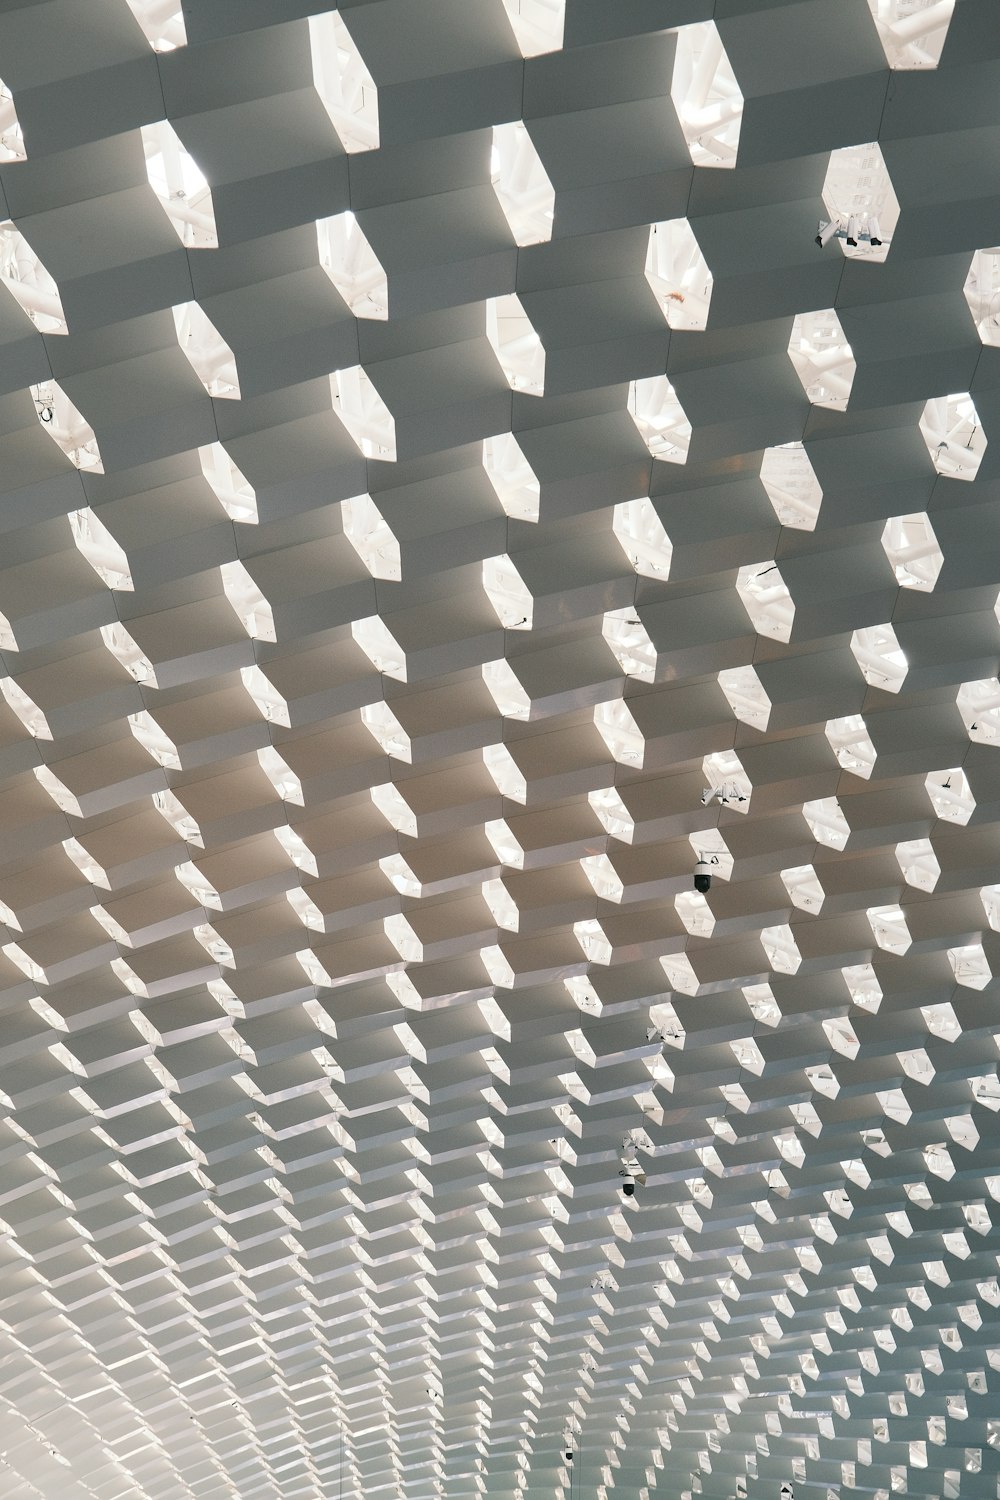 El techo de una estación de tren está cubierto de cubos blancos